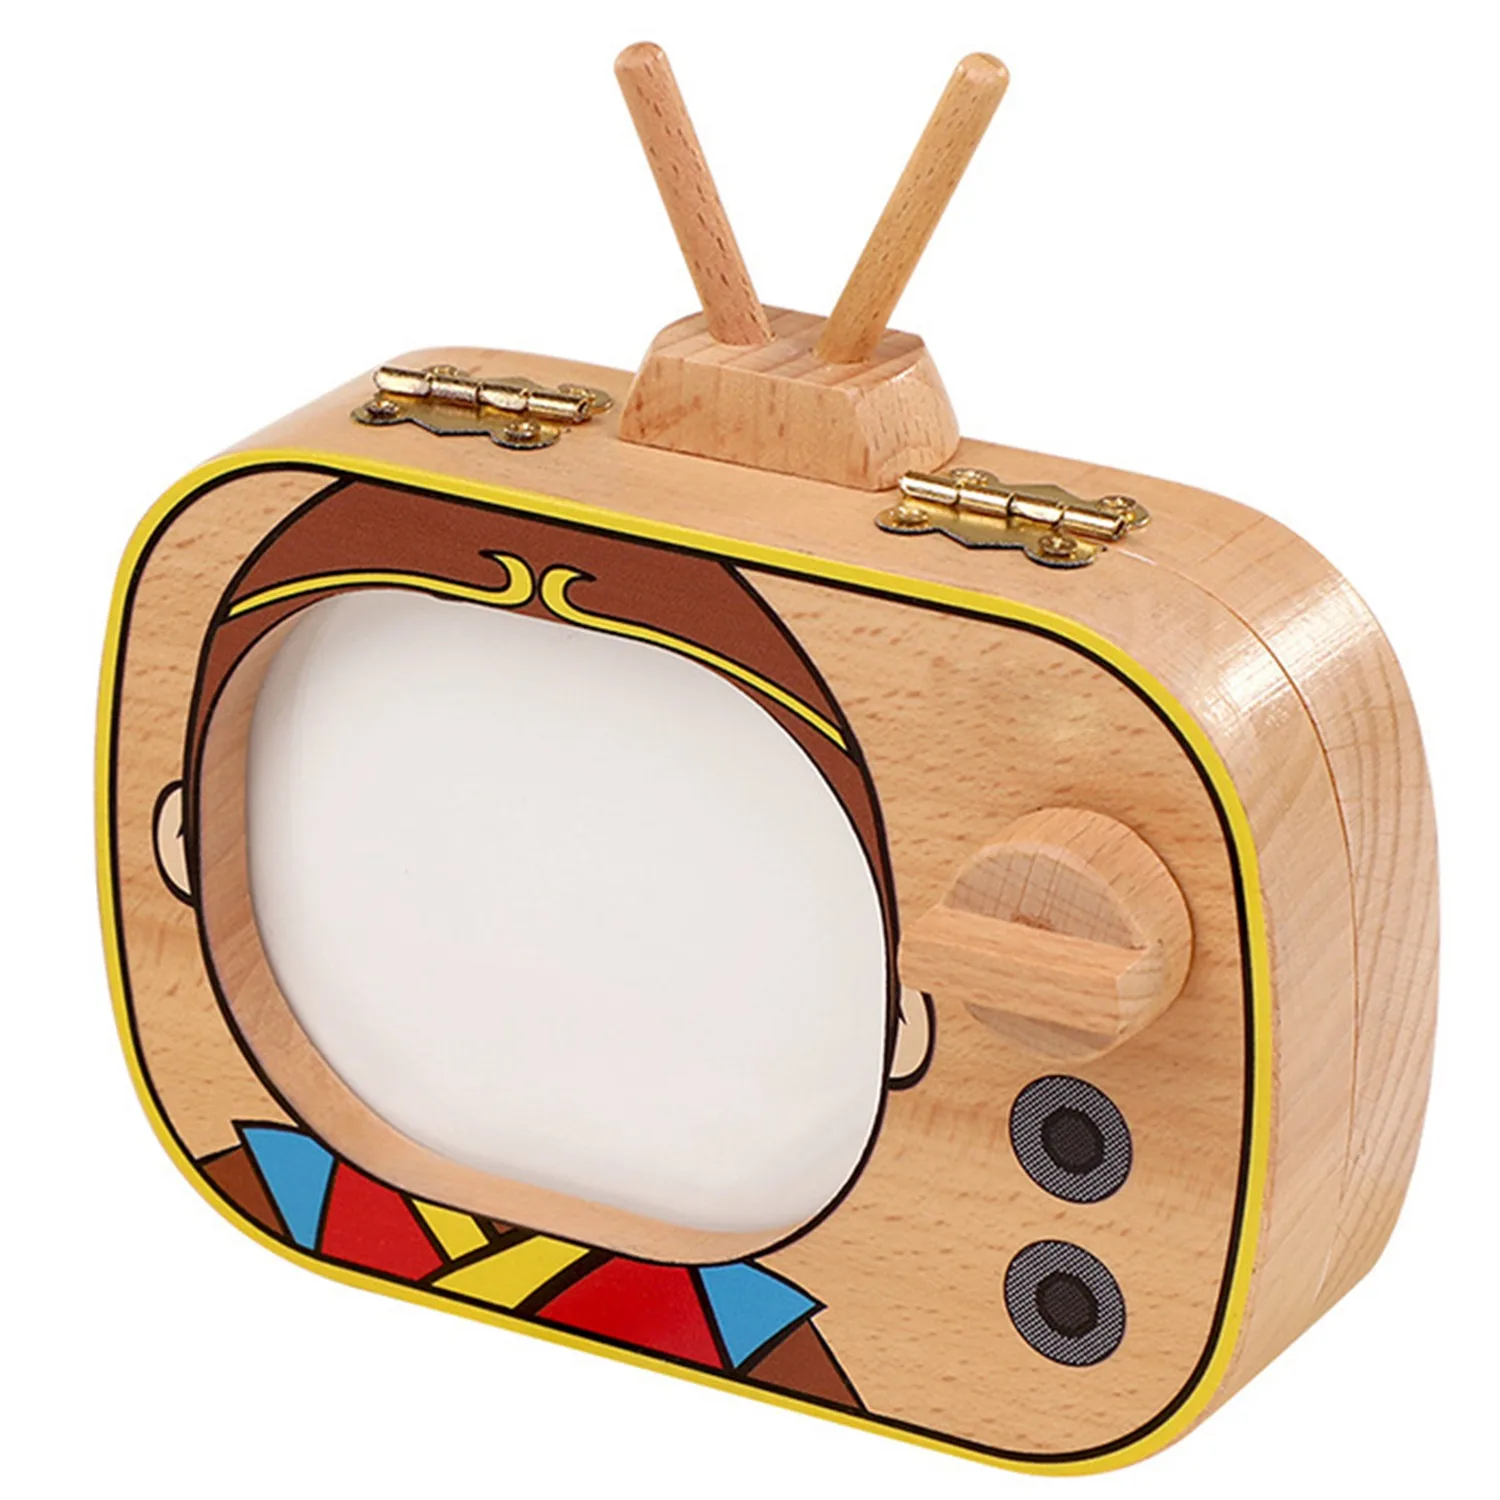 Детская коробка для зуба на память, деревянная коробка для зубов в форме телевизора, коробка для зуба на память, коробка для хранения зуба на память, рекламные подарки для сбора